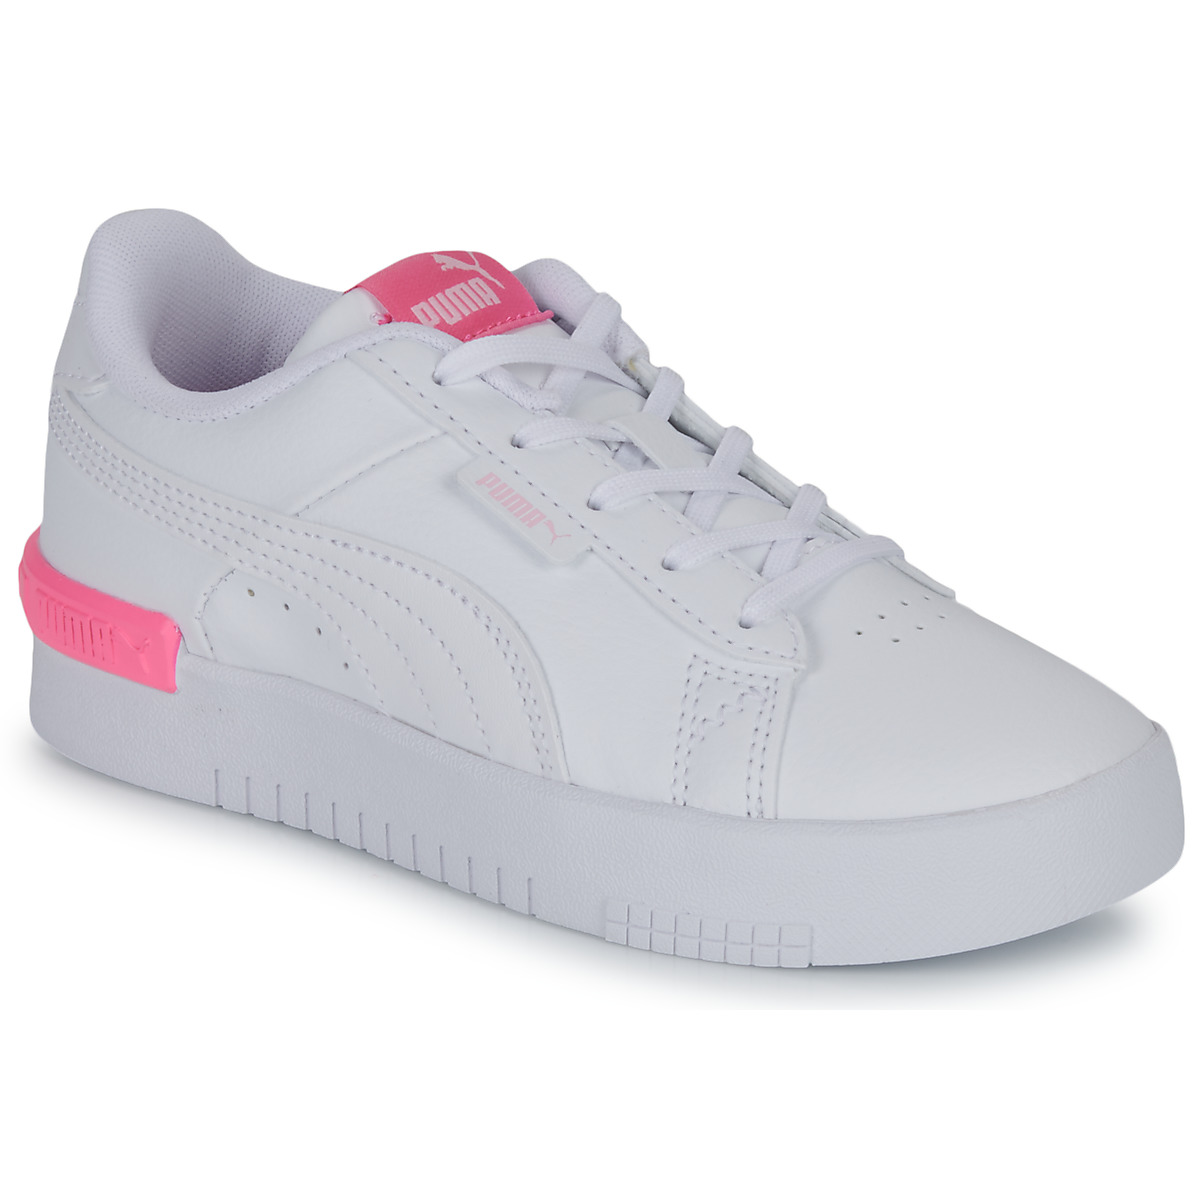 Cipők Lány Rövid szárú edzőcipők Puma Jada PS Fehér / Rózsaszín